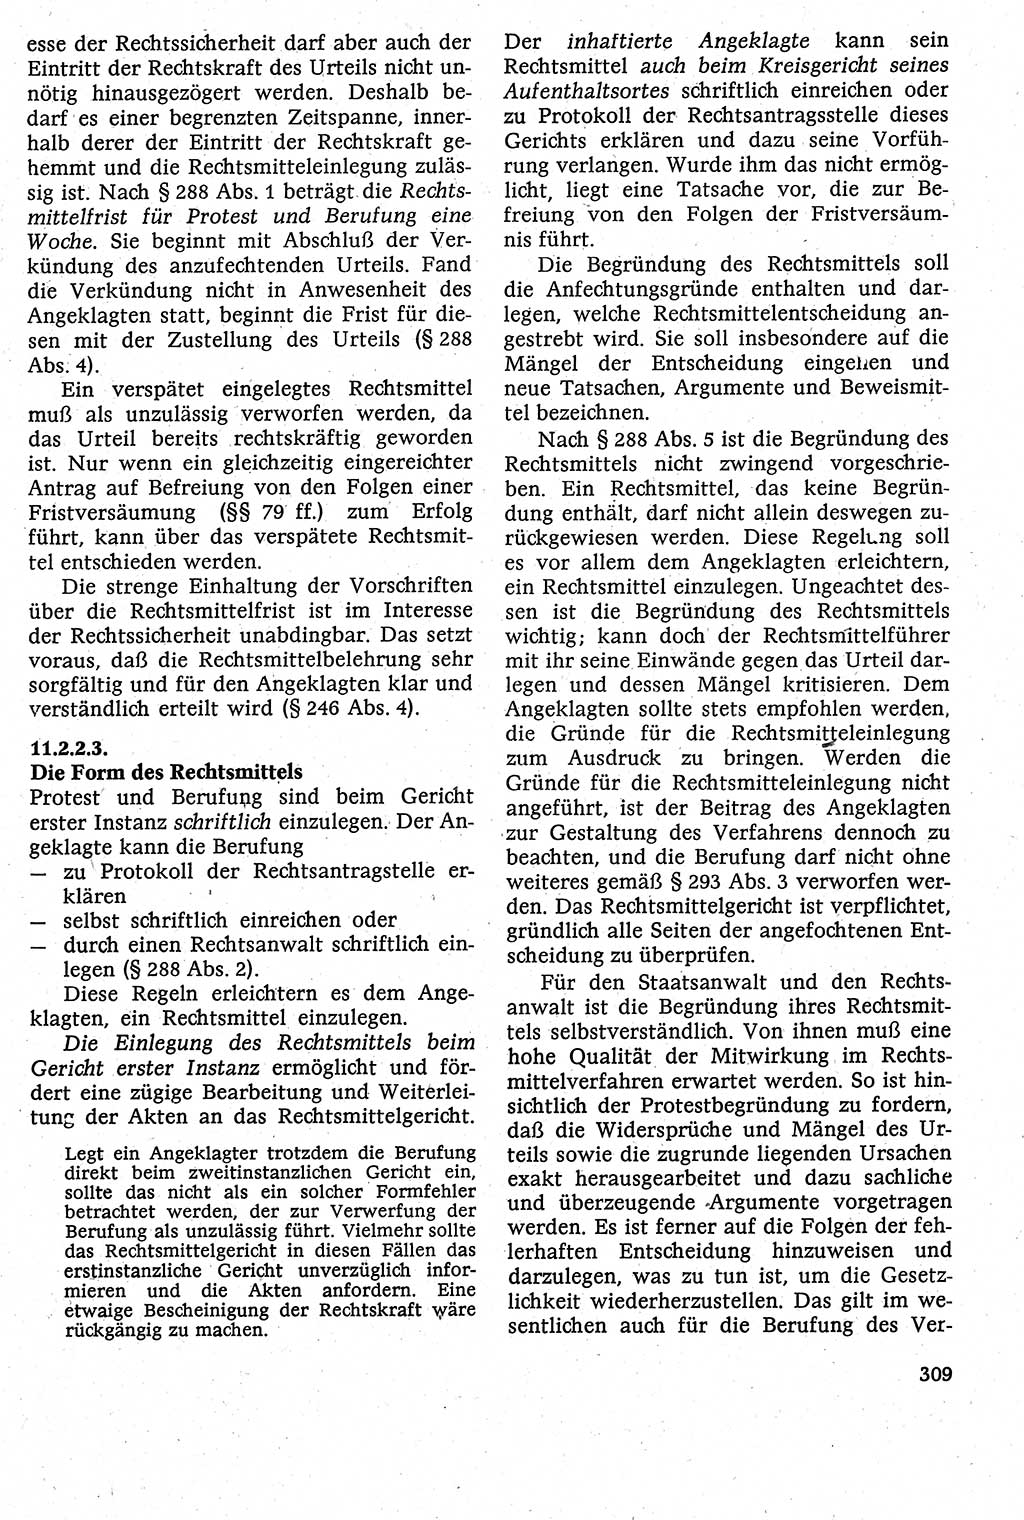 Strafverfahrensrecht [Deutsche Demokratische Republik (DDR)], Lehrbuch 1982, Seite 309 (Strafverf.-R. DDR Lb. 1982, S. 309)